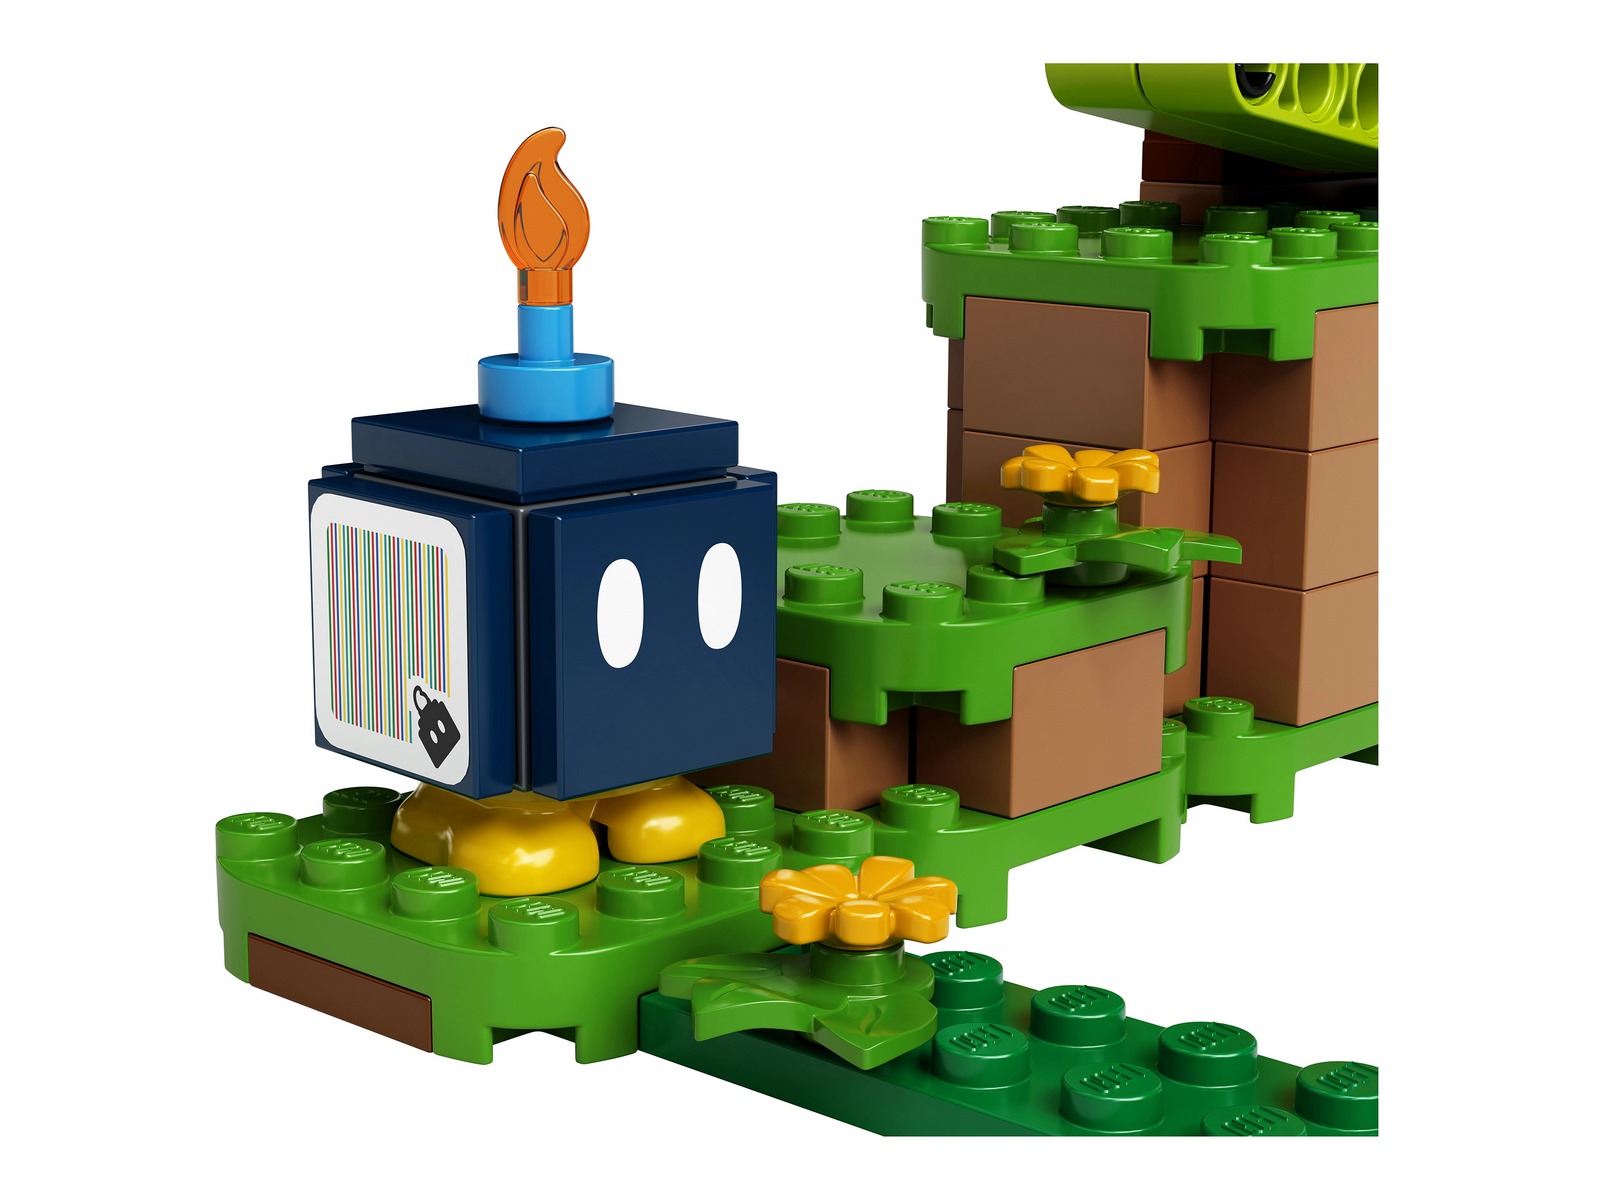 Конструктор LEGO Super Mario «Охраняемая крепость» Дополнительный набор 71362 / 468 деталей